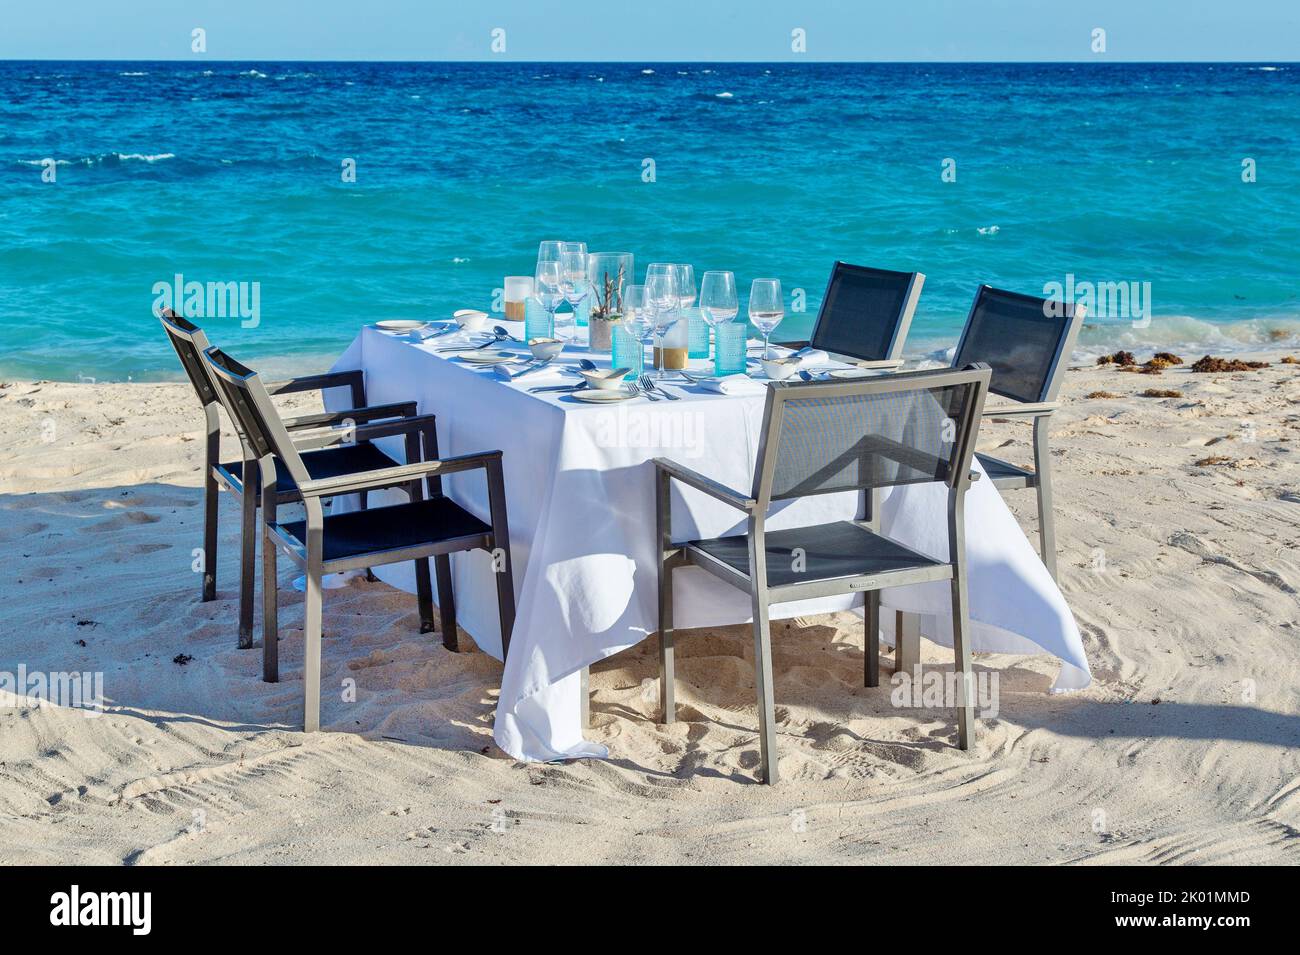 Dinner on a sandy beach Stock Photo